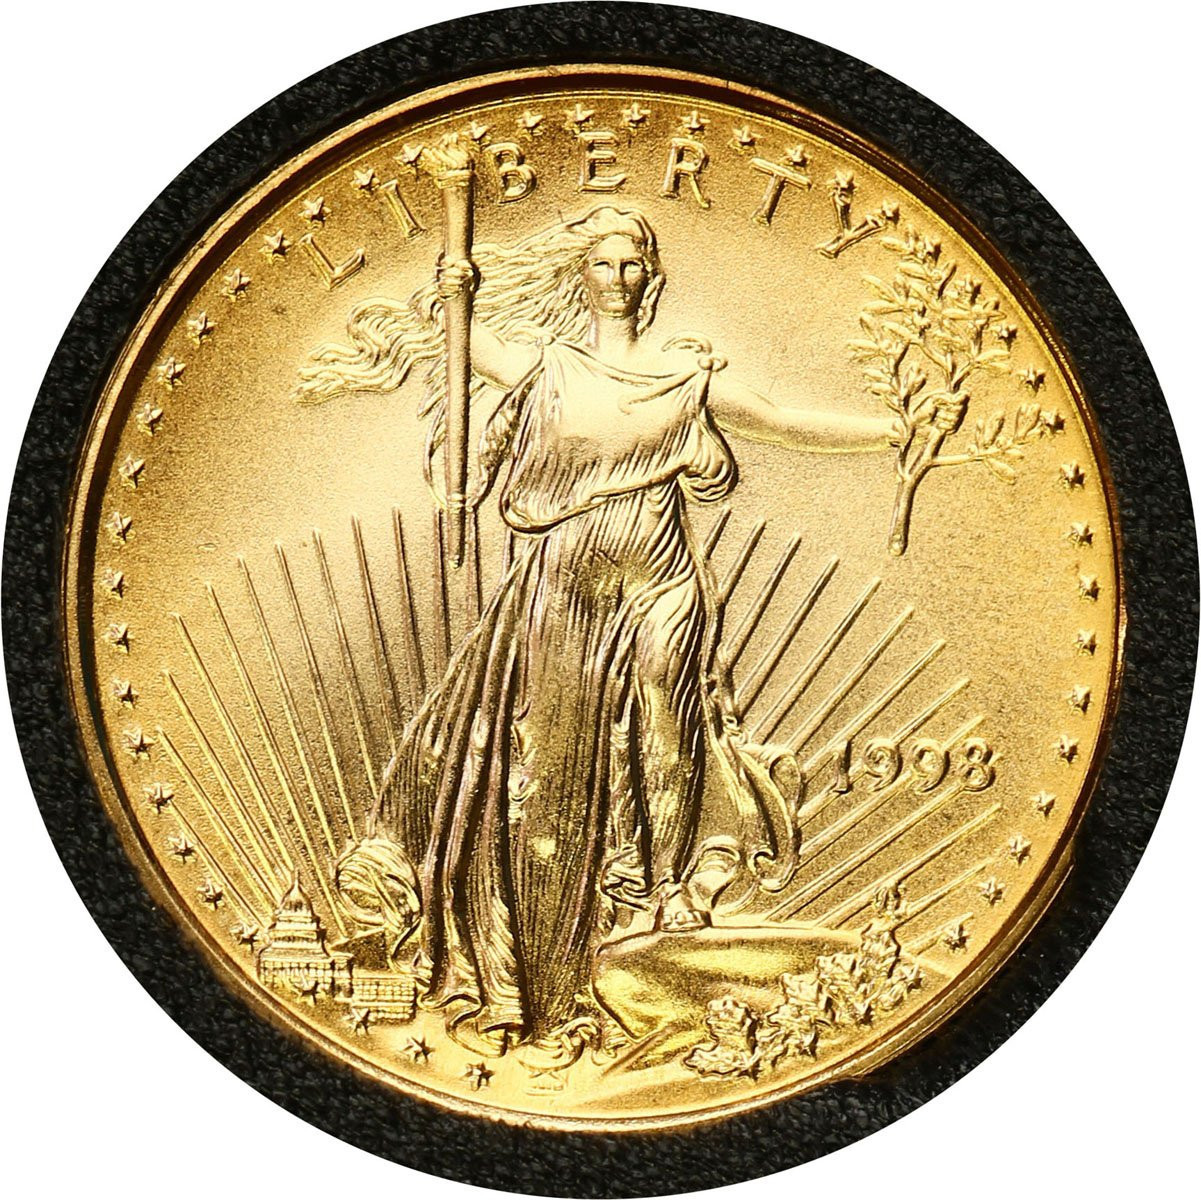 USA. 5 $ dolarów 1999 - 1/10 uncji złota